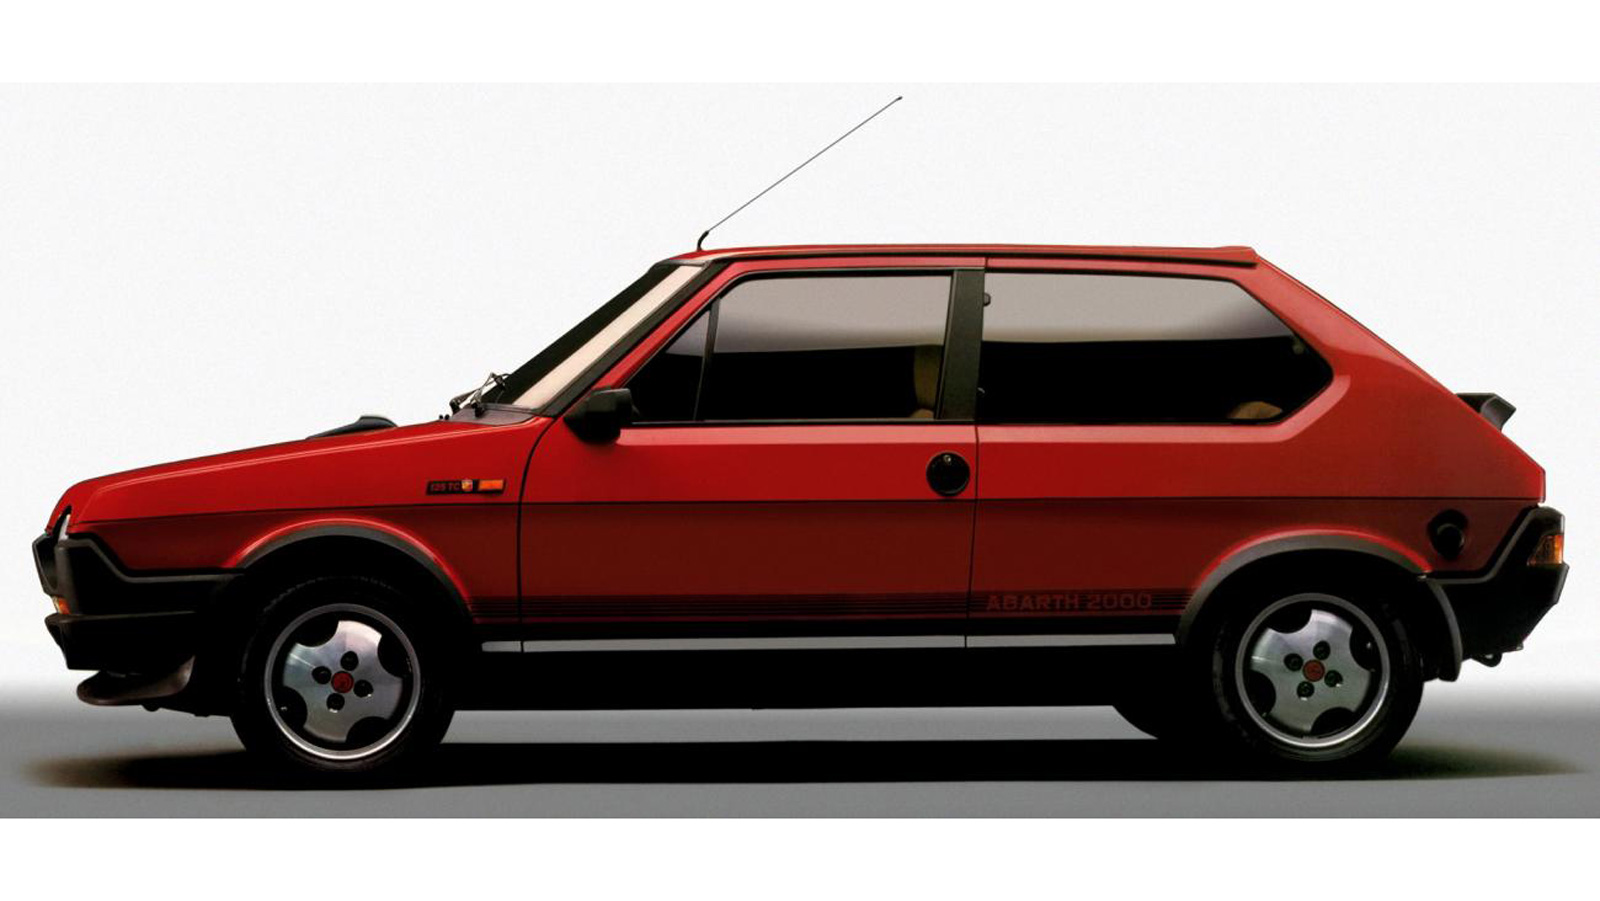 Fiat Ritmo Abarth: Το ξεχασμένο ιταλικό hot hatch